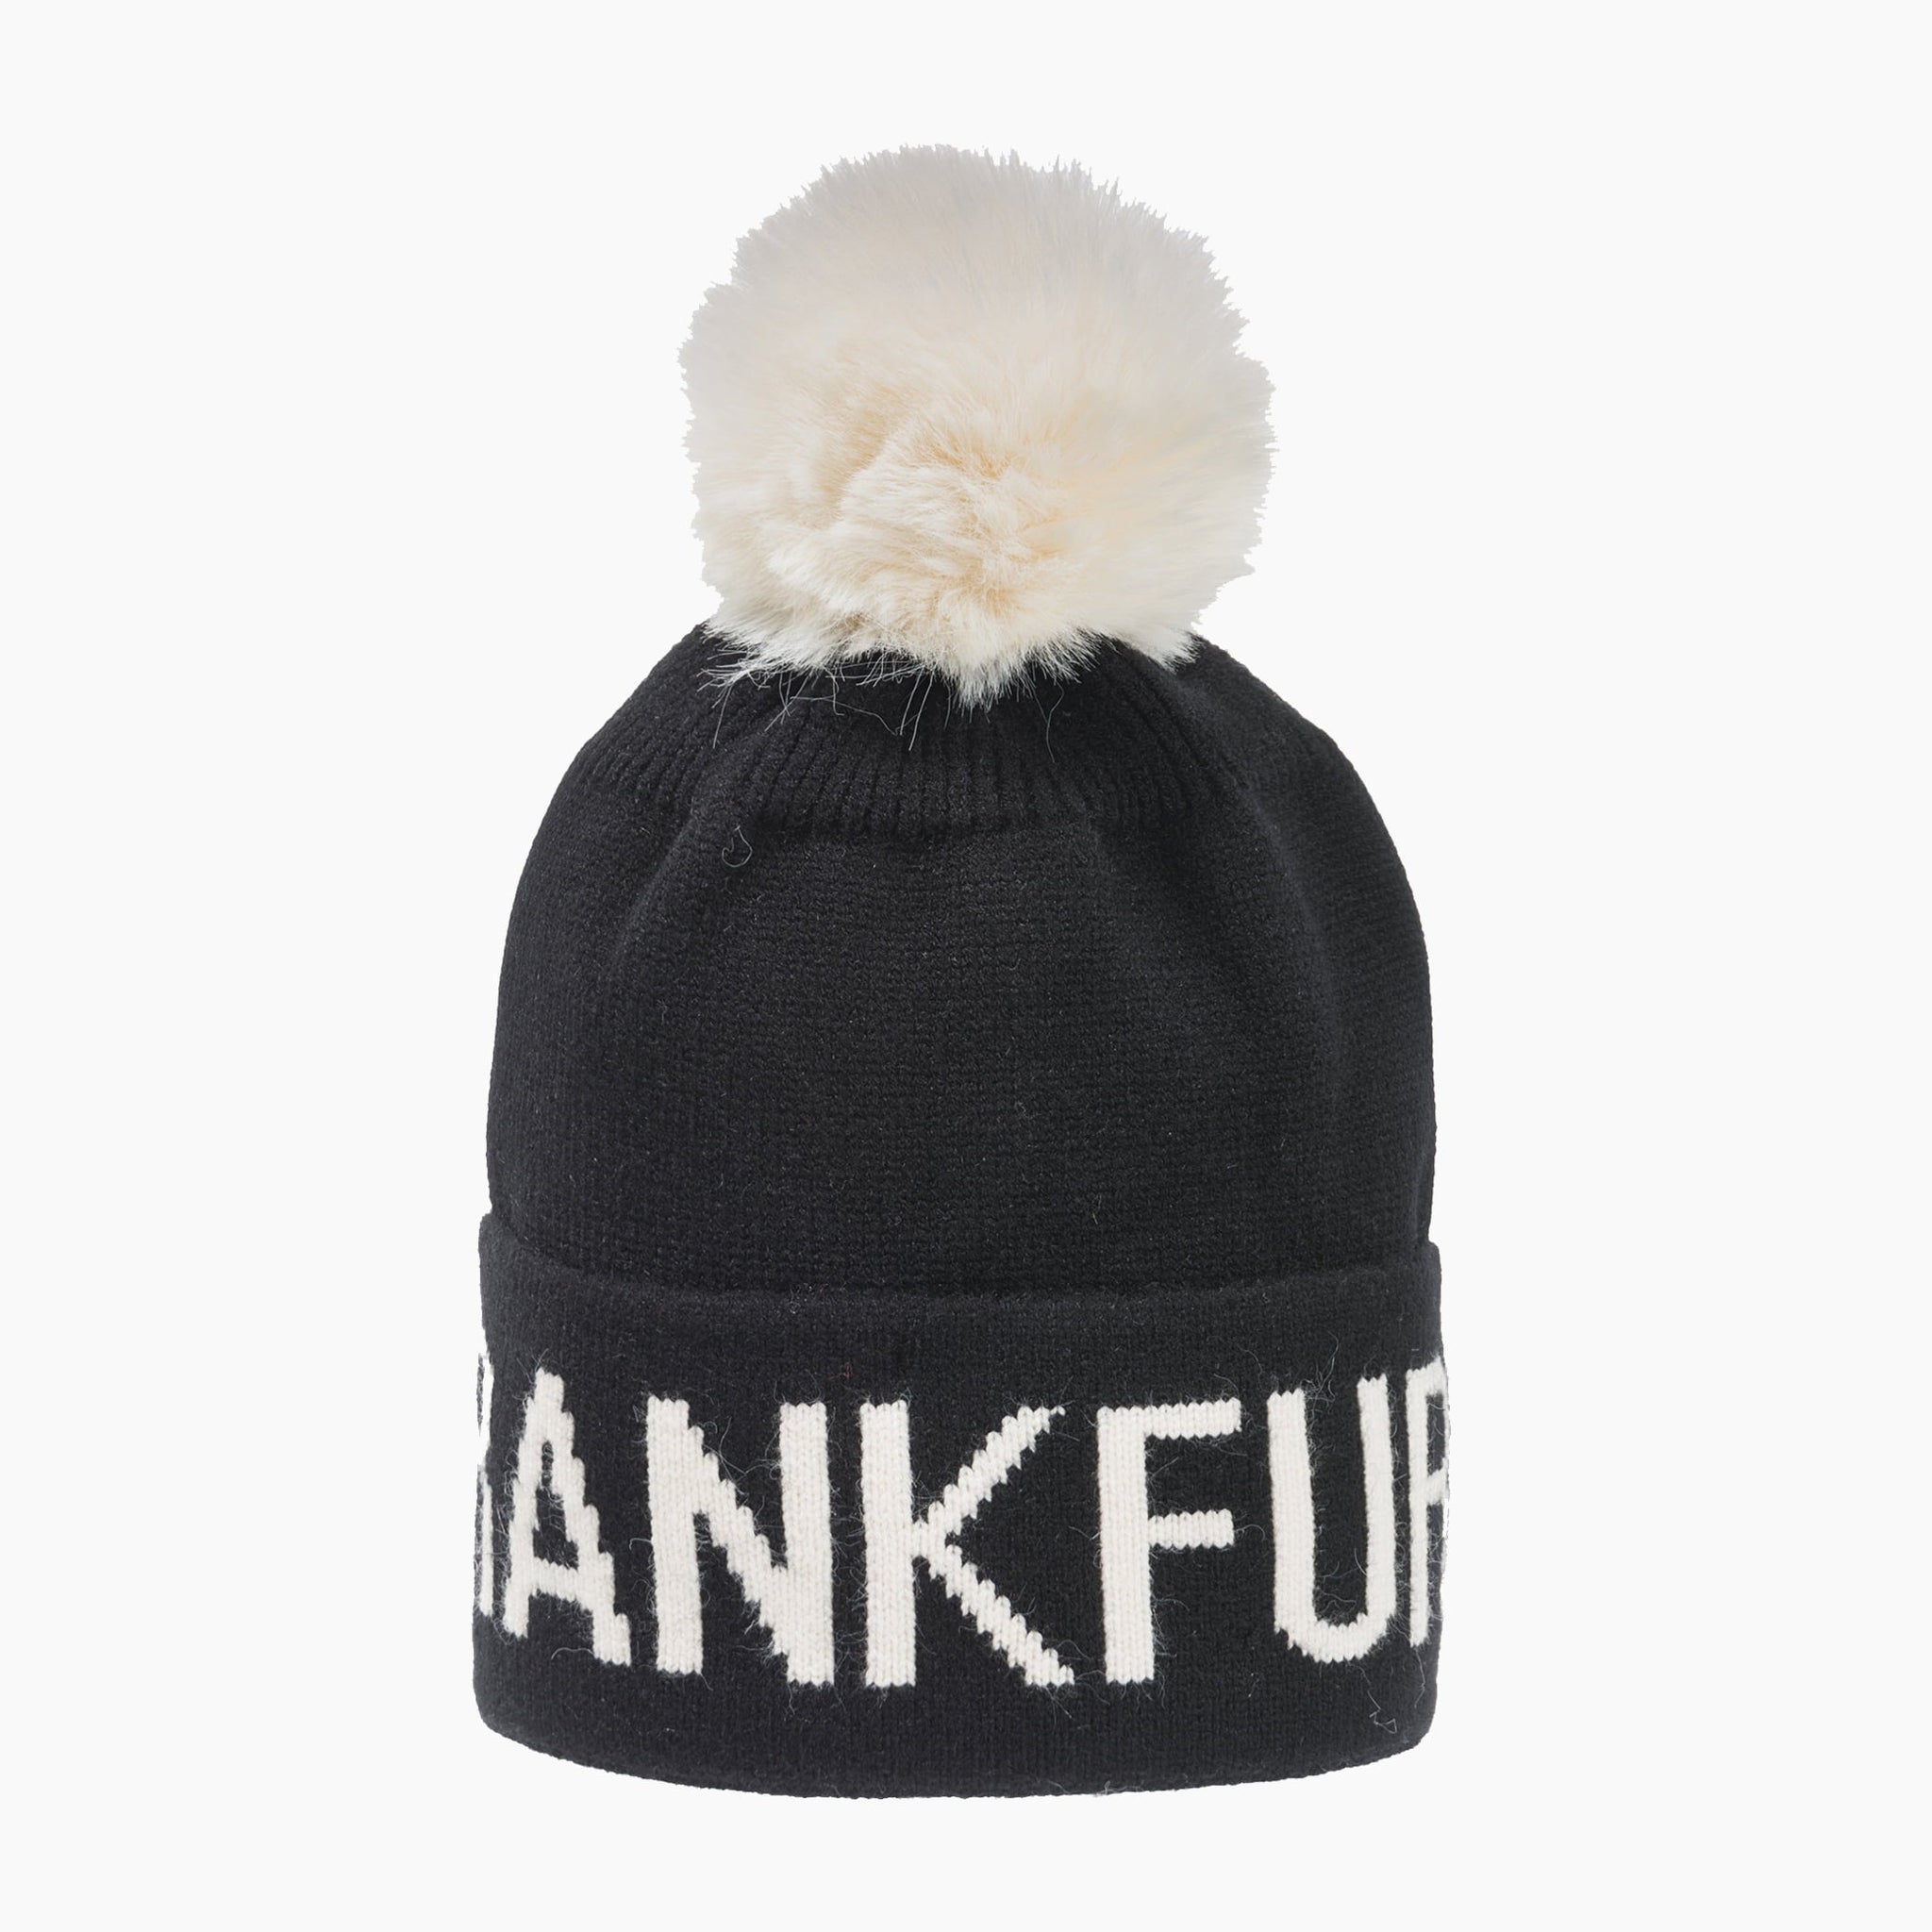 Frankfurt Winter hat - Robin Ruth